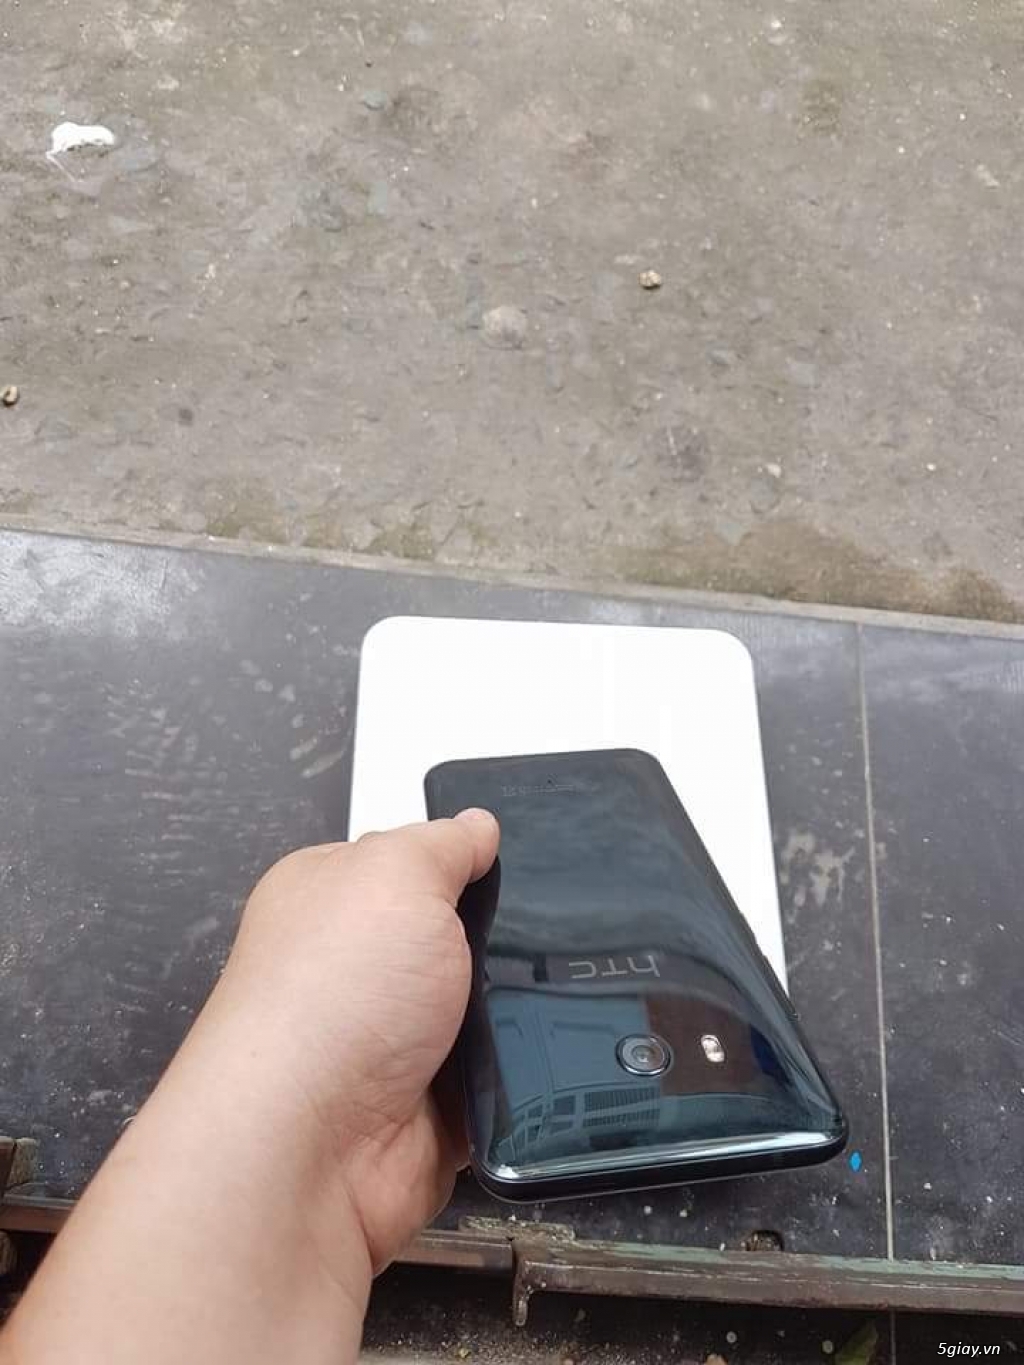 HTC U11 đen 2 sim, hàng HTC Việt Nam bảo hành 8/2018 có bh vàng rơi vỡ - 5